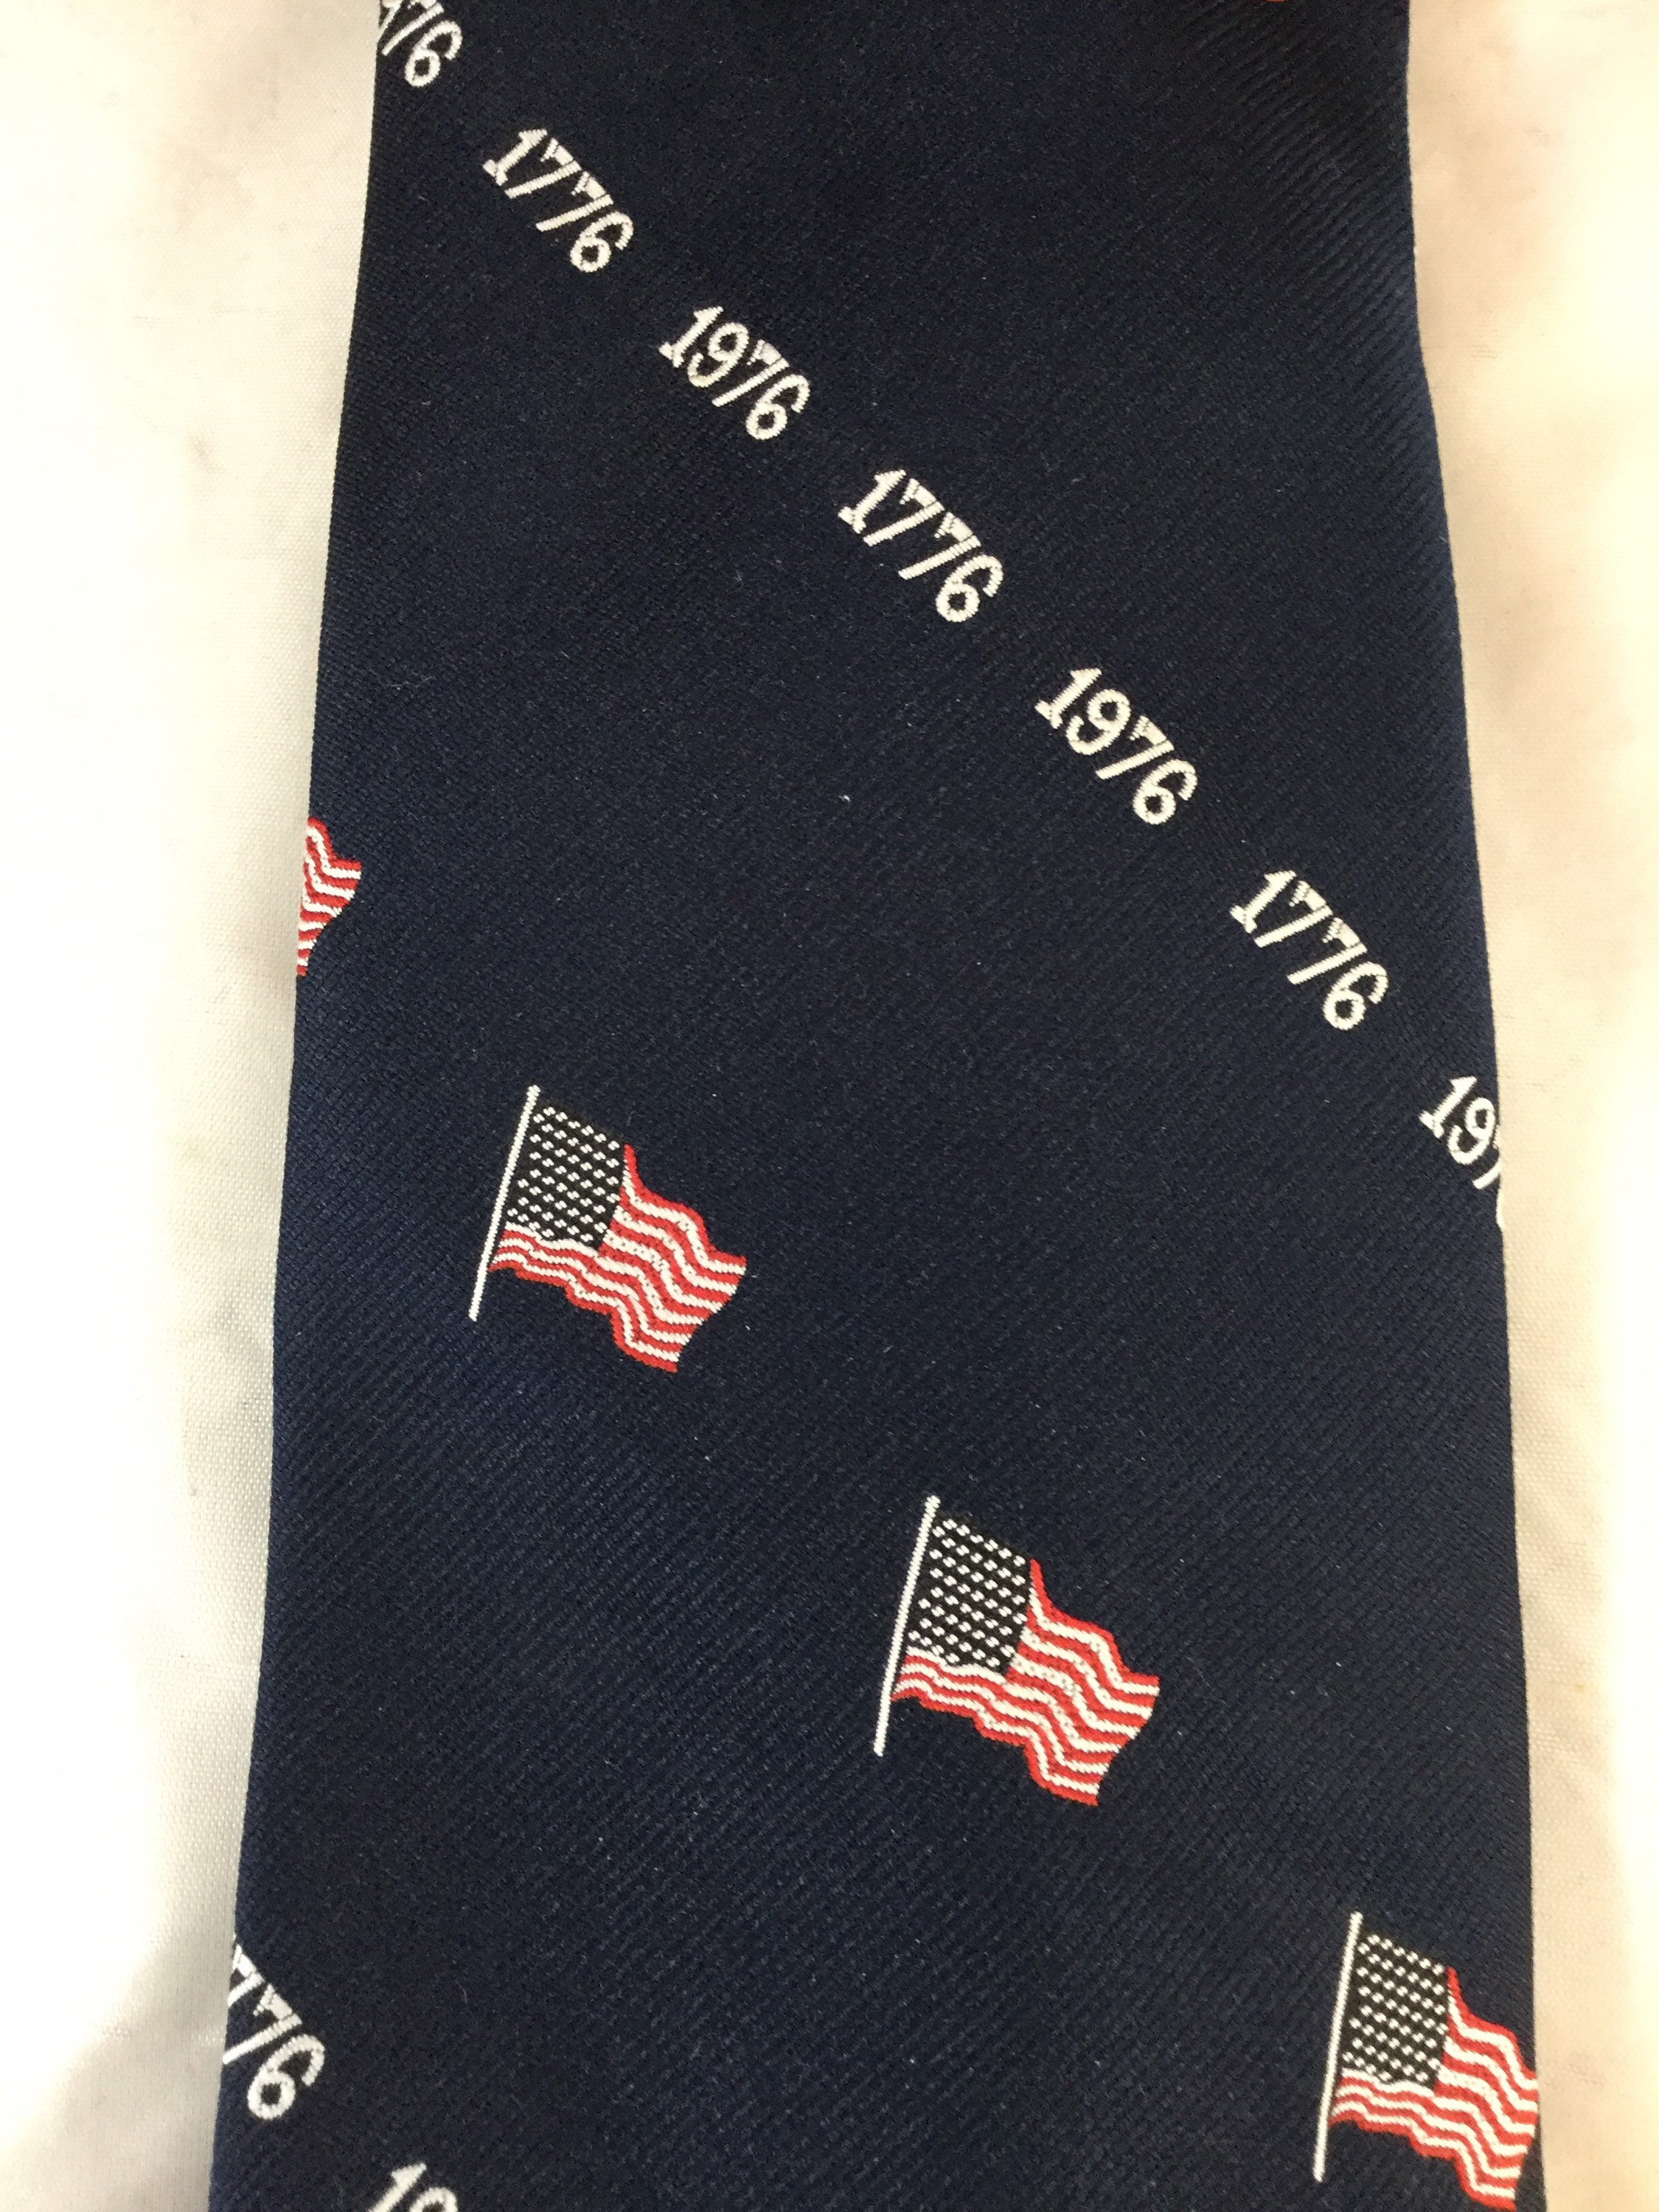 1976 Bicentennial Tie Vintage Flag Tie Patriotic Tie - Etsy